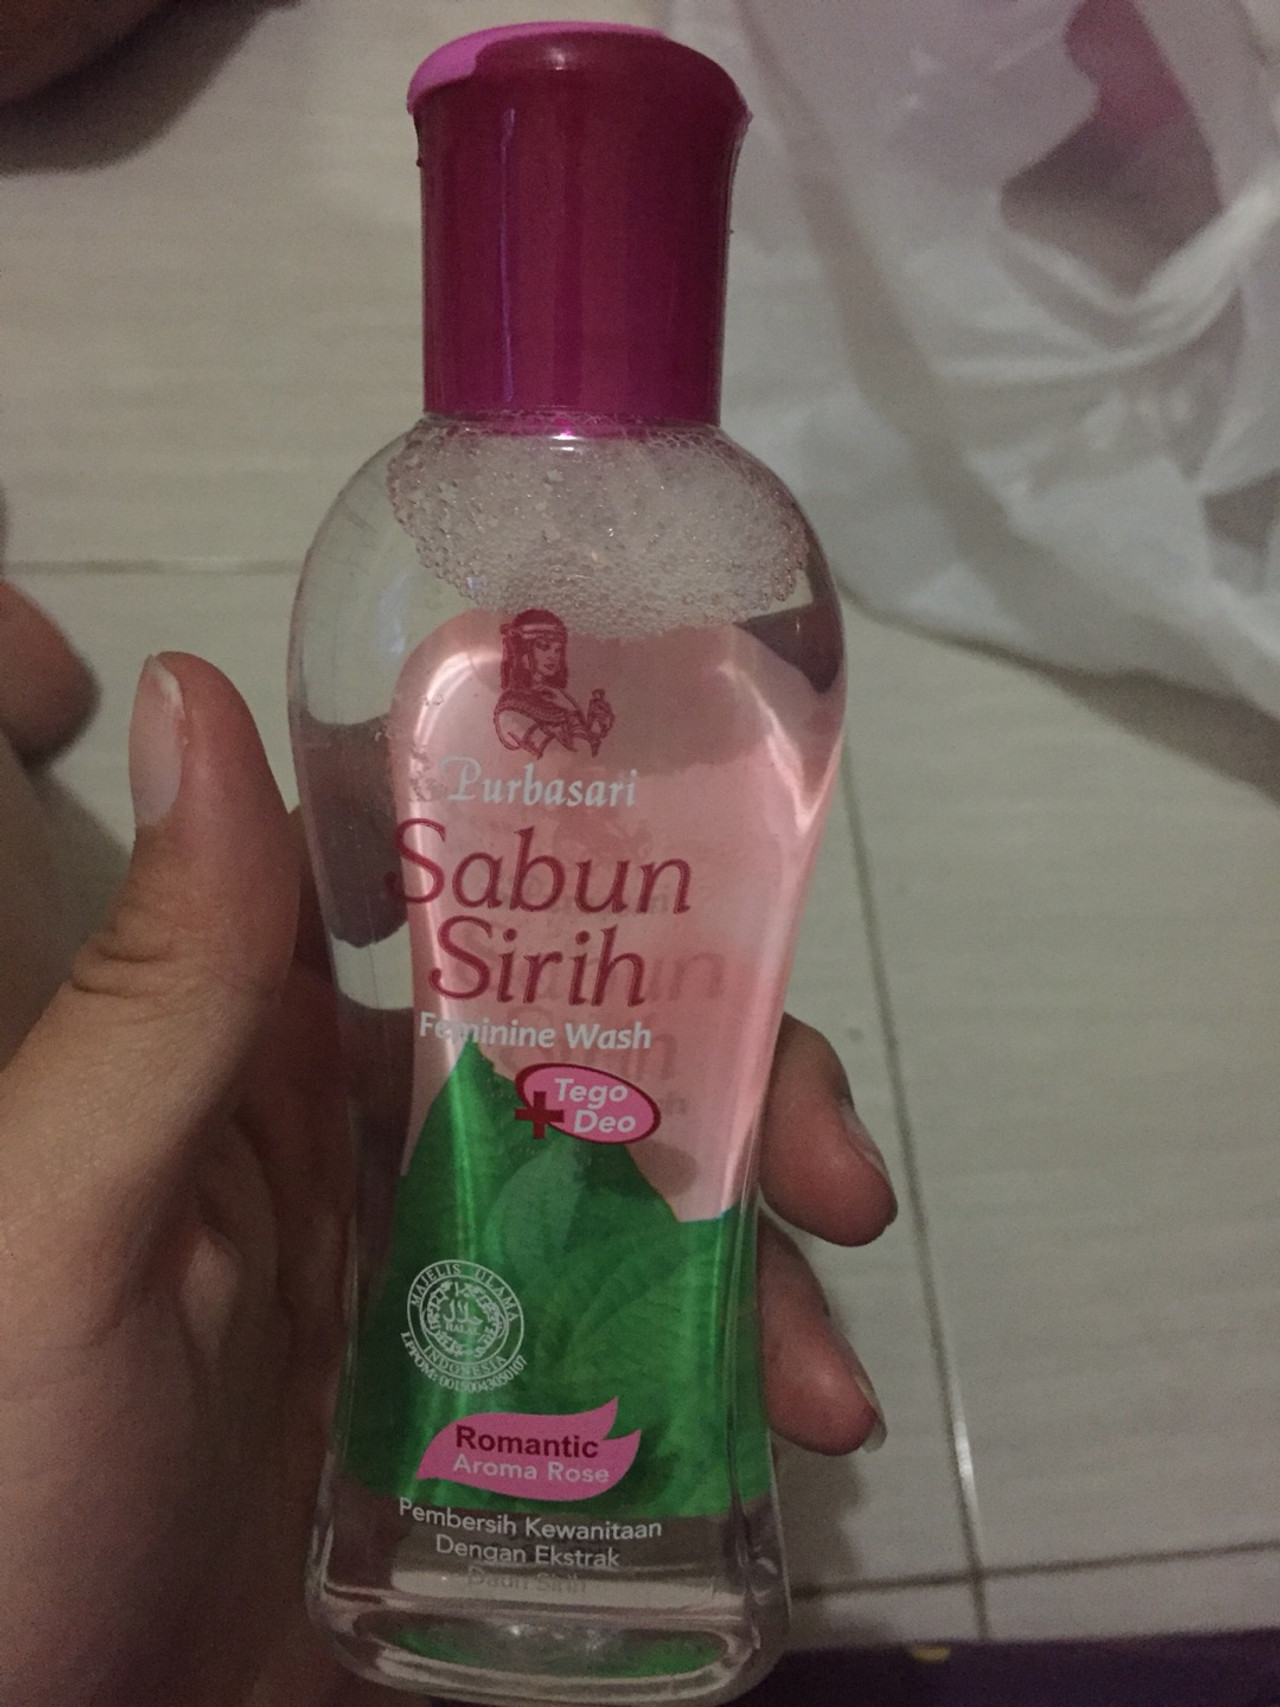 Purbasari Sabun Sirih Feminine Wash Romantic Rose, 125 ml - UD Jawa ...